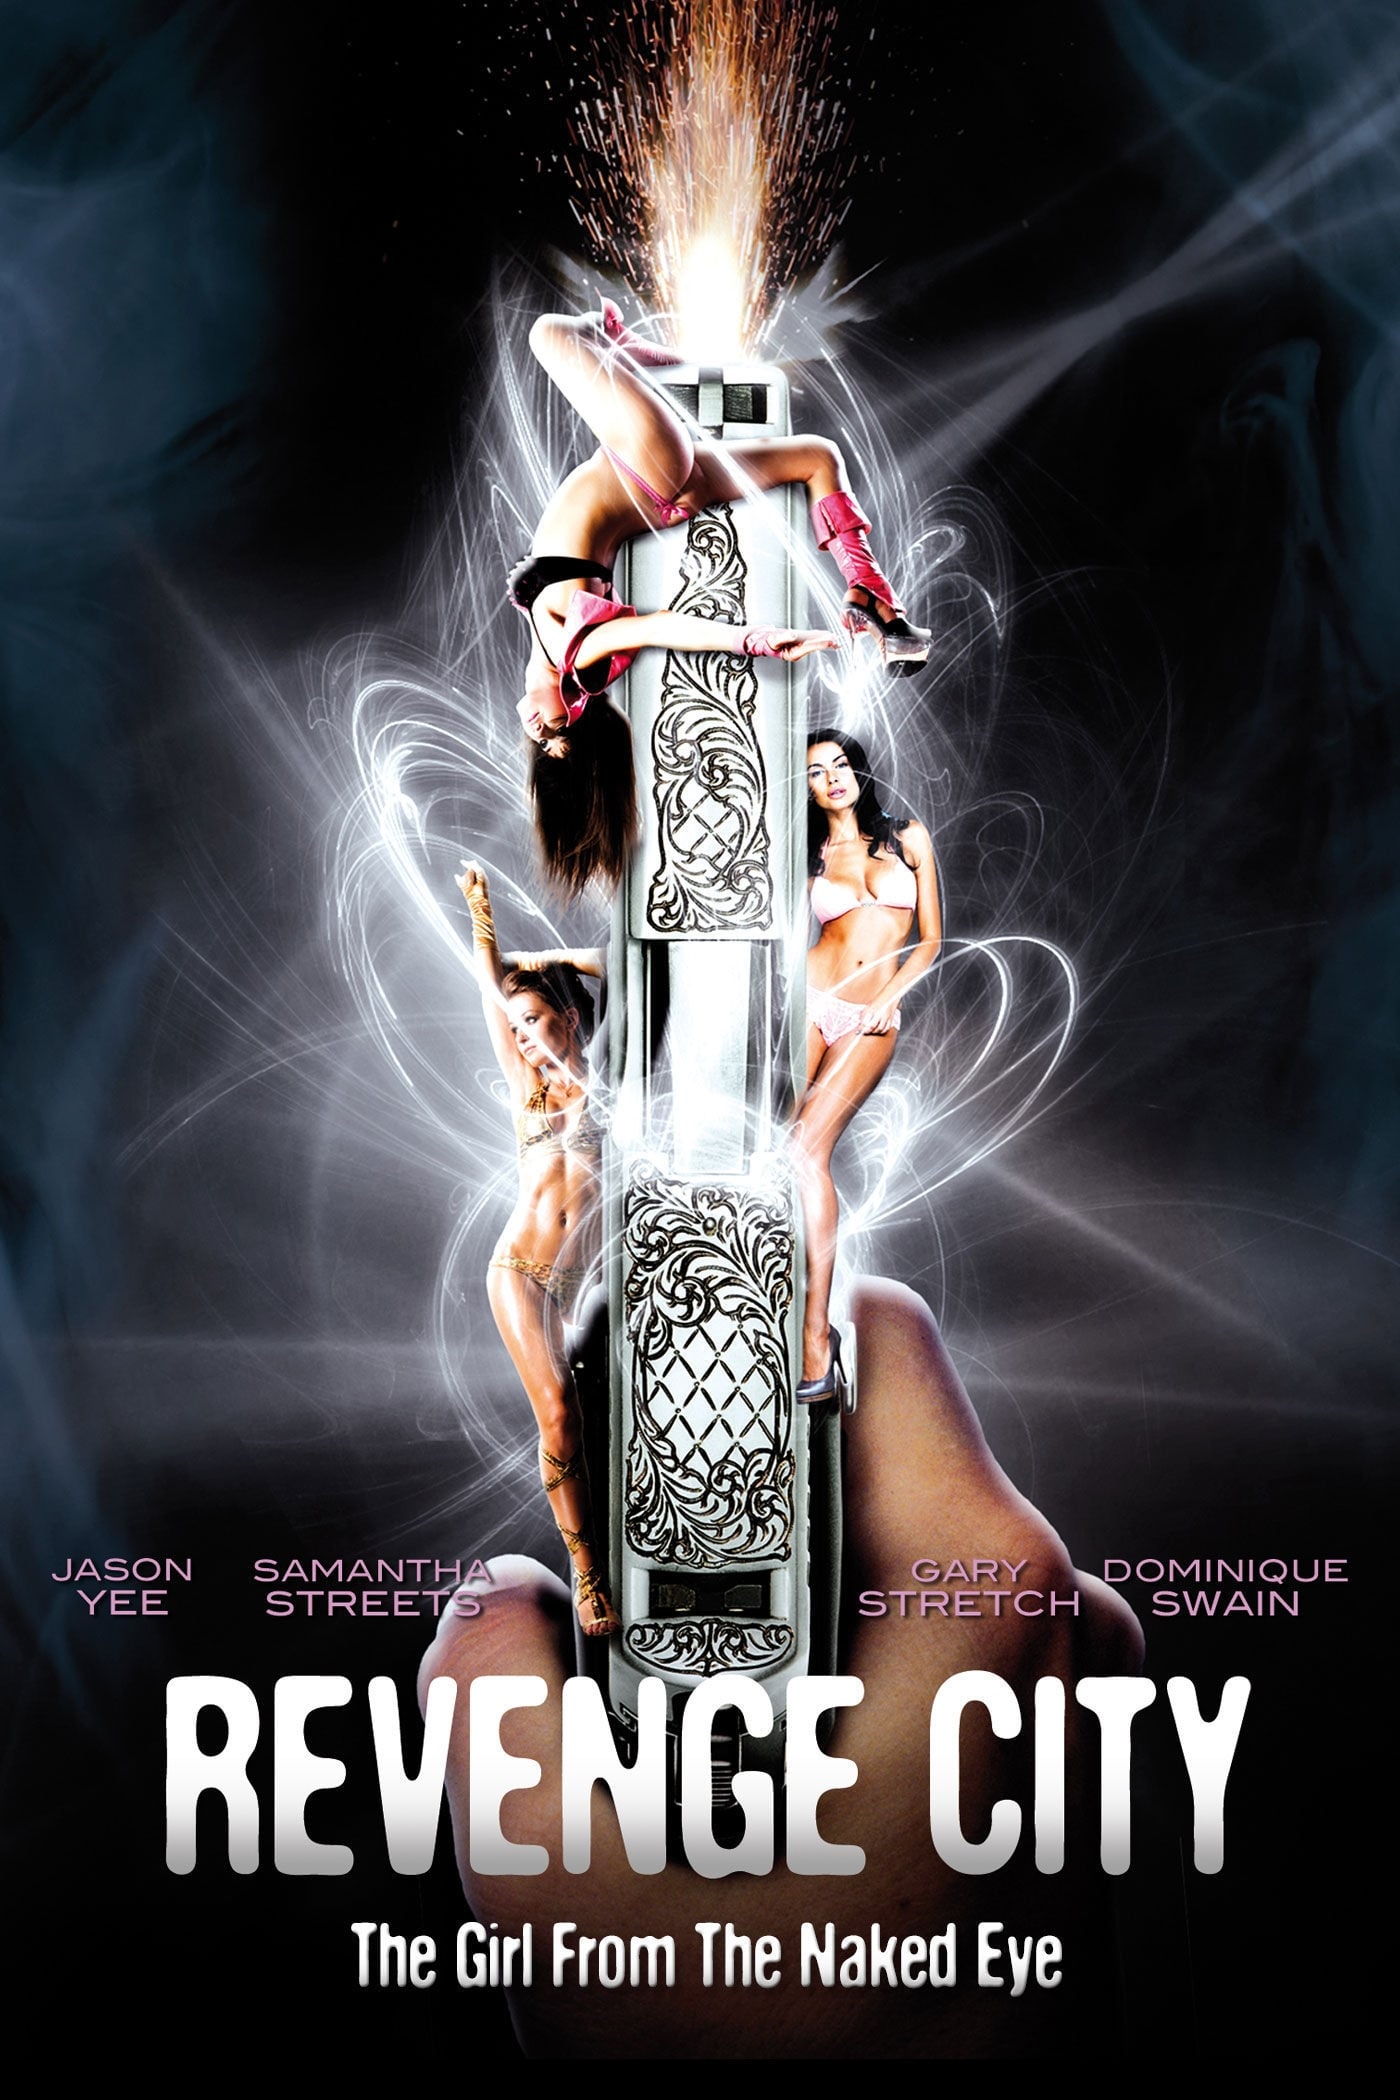 The Girl from the Naked Eye – Revenge City [HD] (2012)